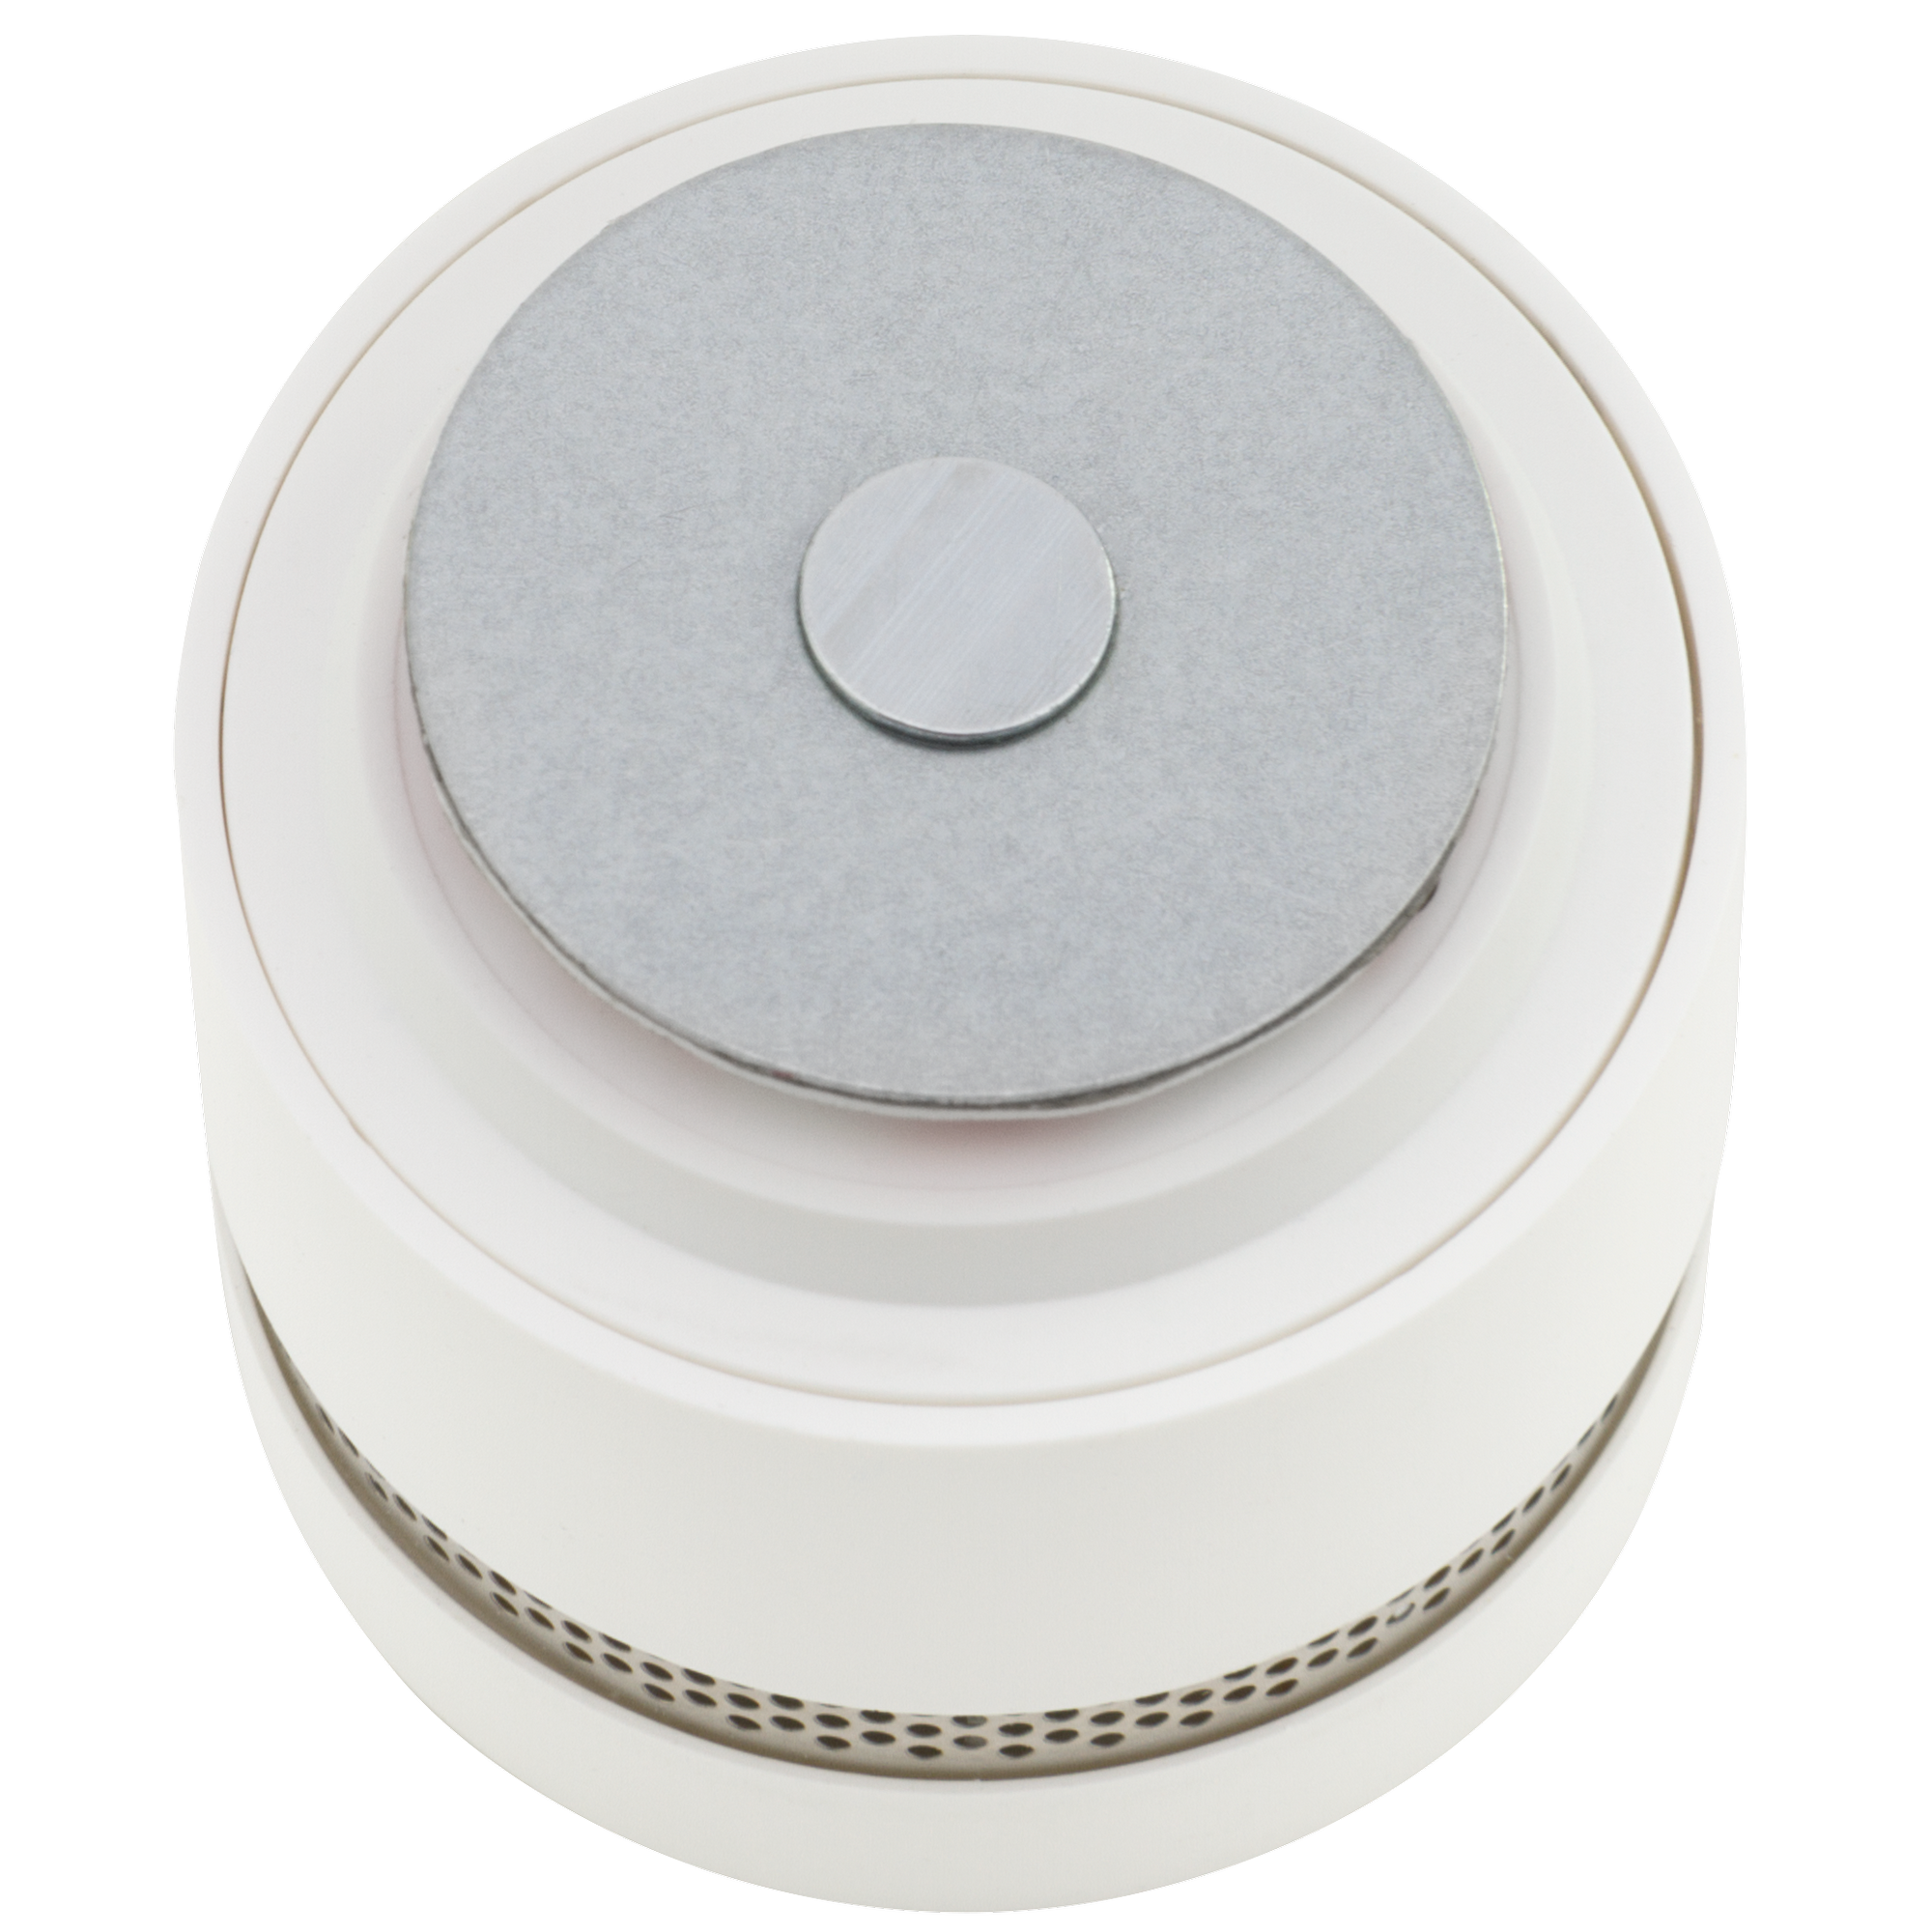 Magnetbefestigung für Rauchmelder 'Mini' weiß Metall 35 mm + product picture